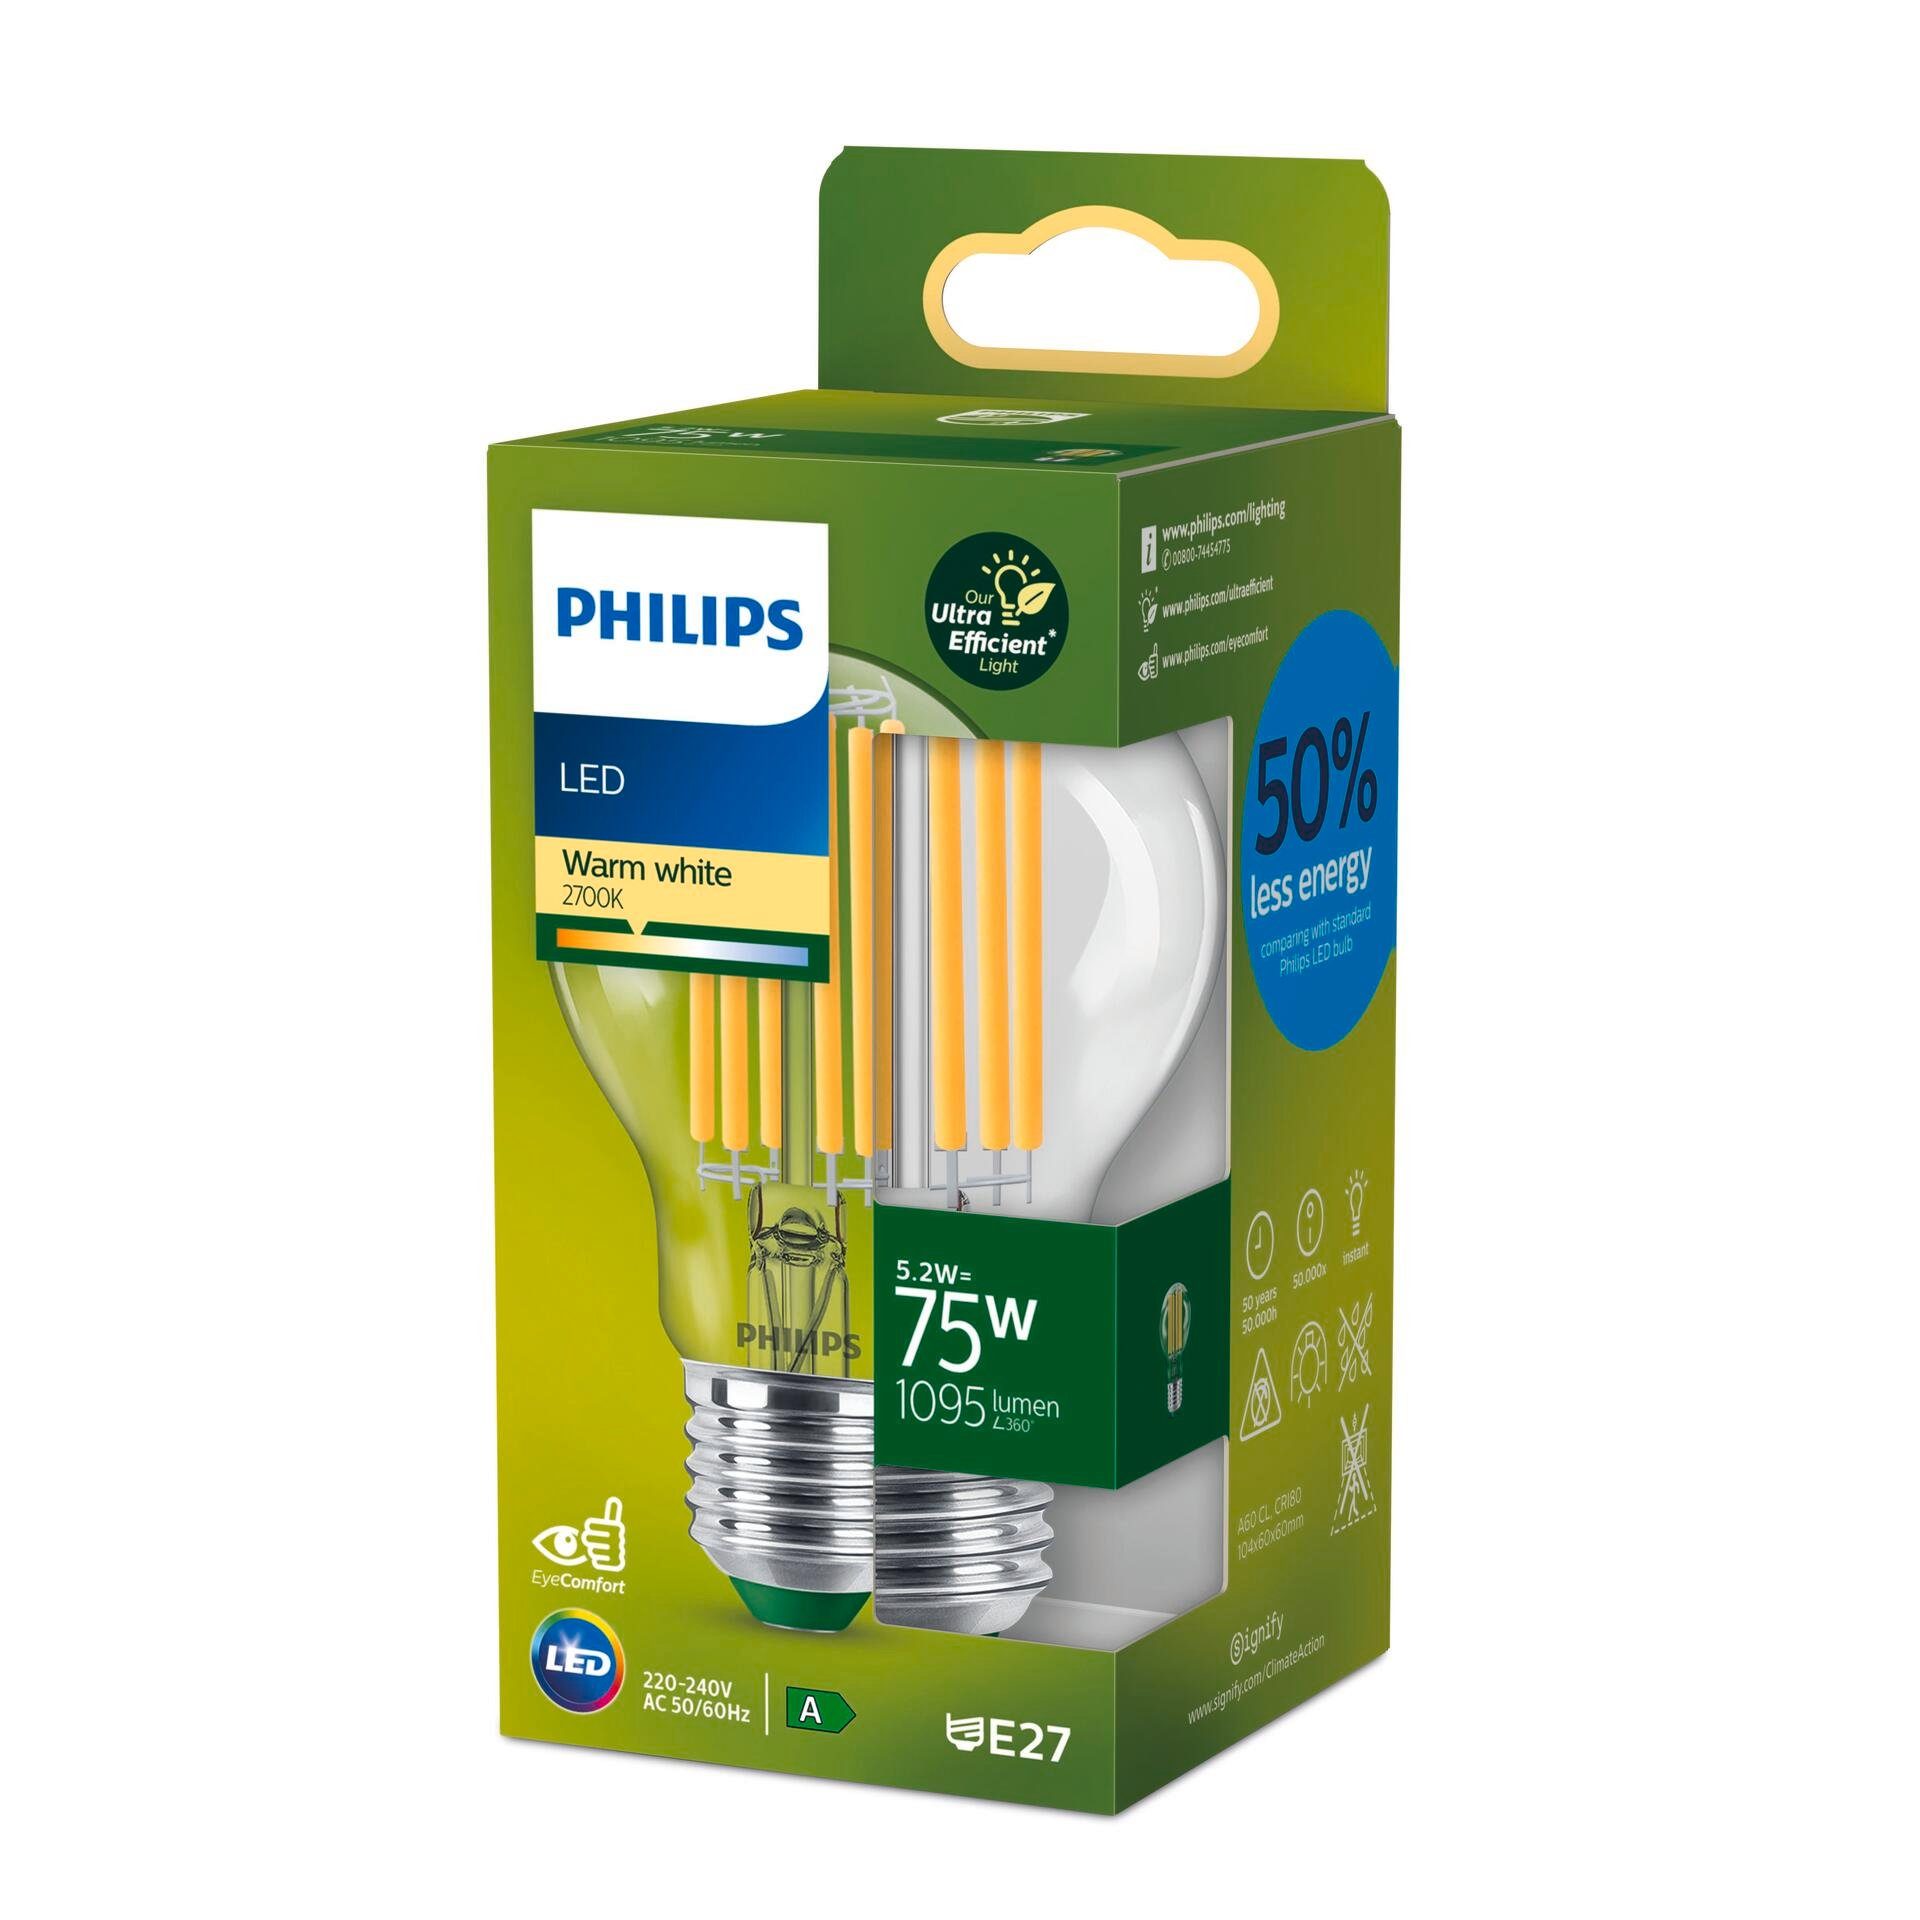 Smarte fest LED-Lampe, LED-Leuchte Philips integriert LED